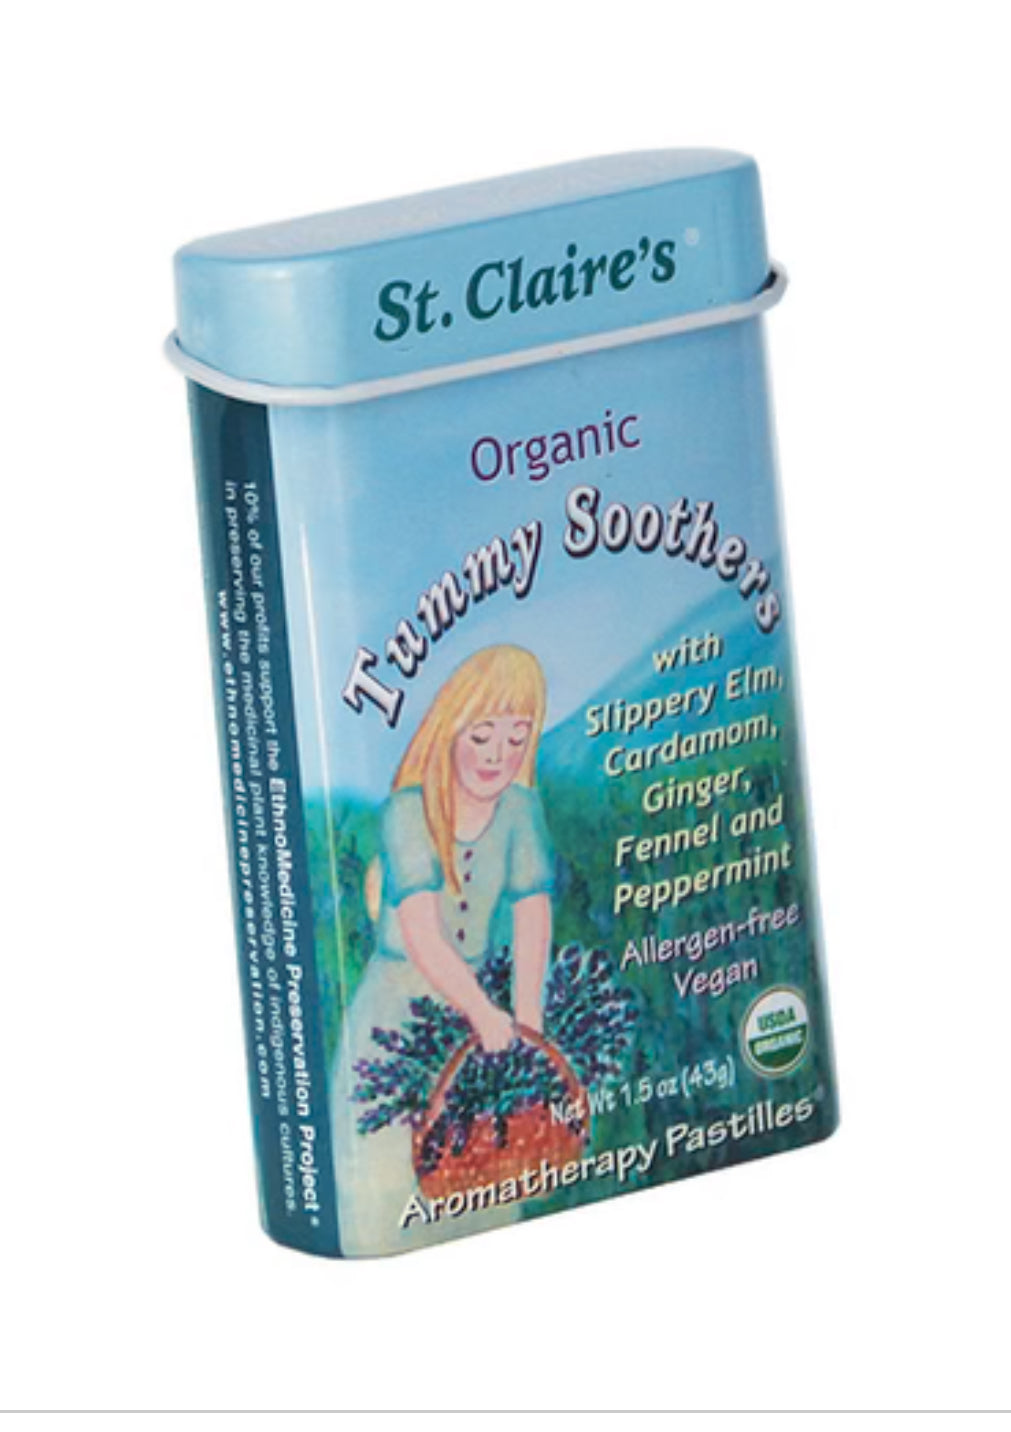 St. Claire's Organic Pastilles